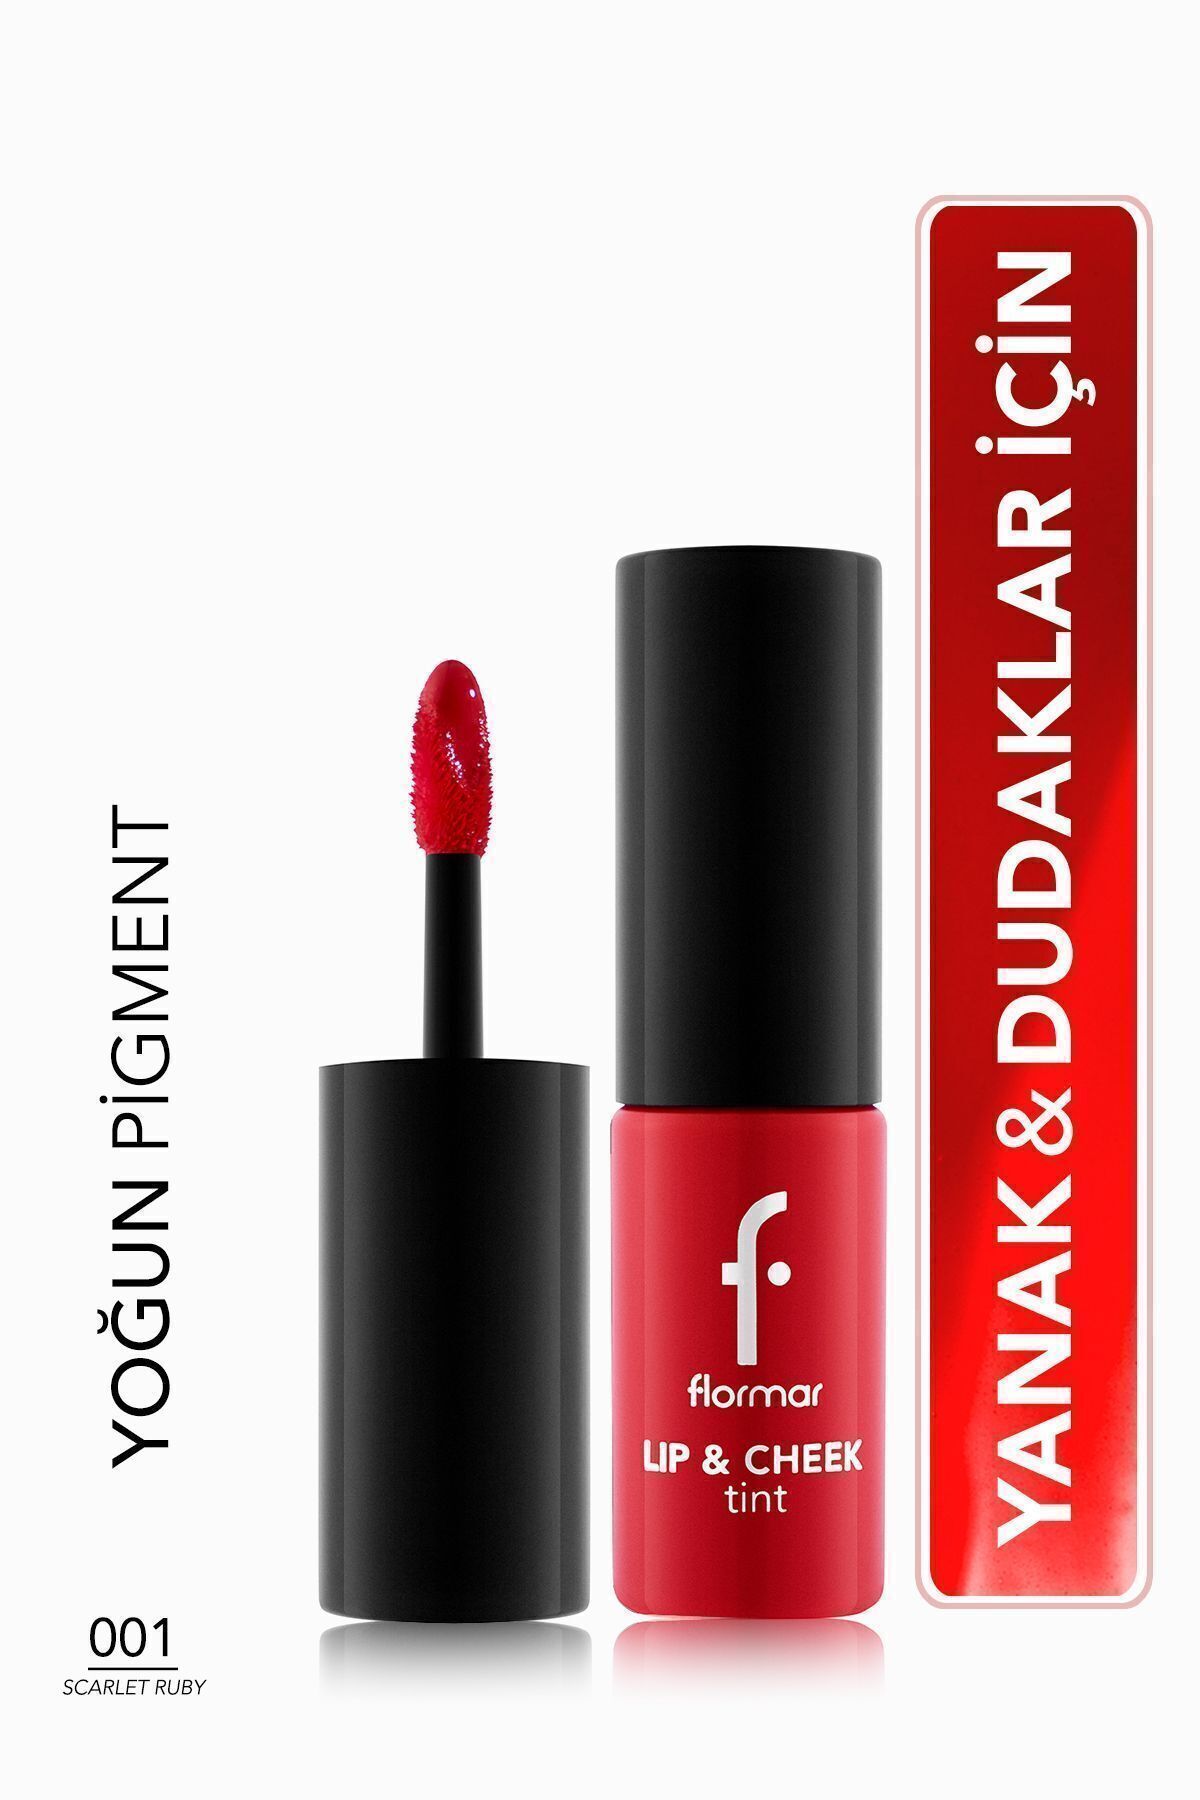 Flormar Uzun Süre Kalıcı Jel Tint (KIRMIZI) - Lip & Cheek Tint - 001 Scarlet Ruby - 8682536066884